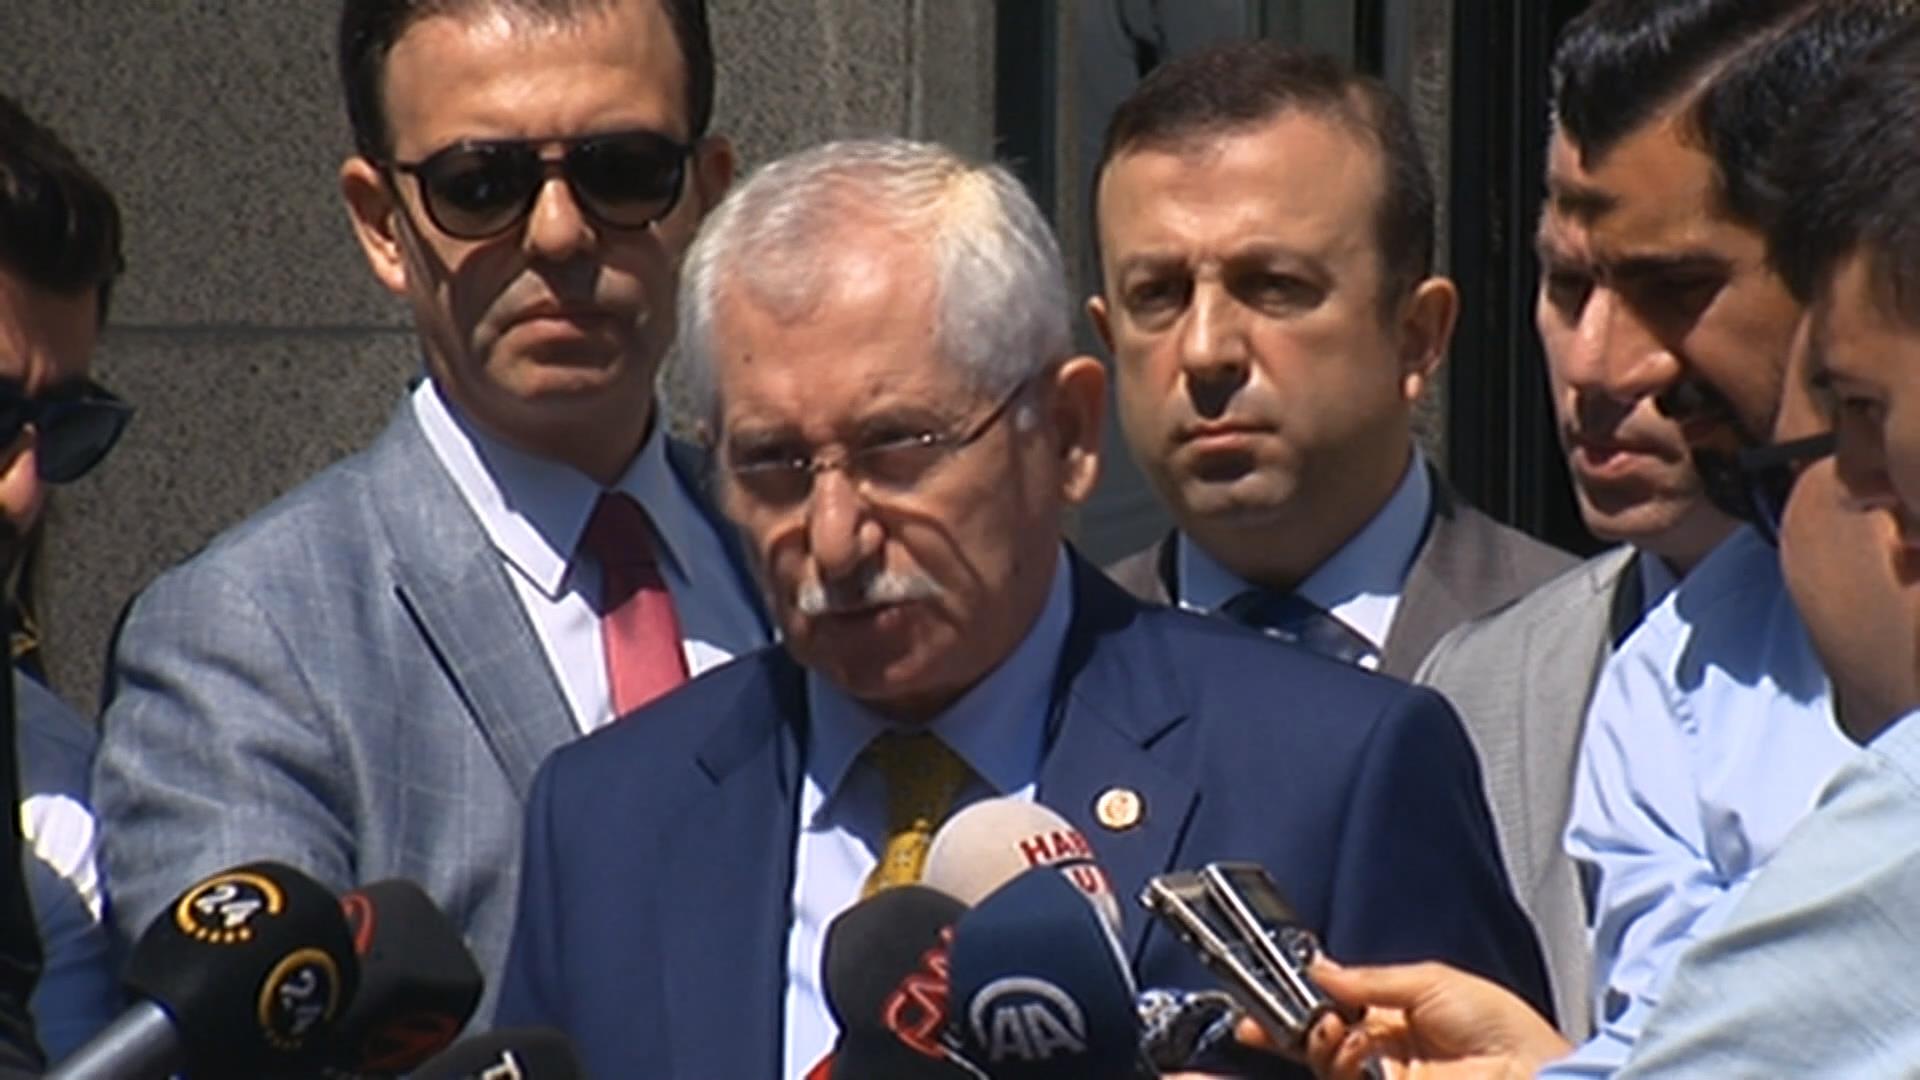 YSK Başkanı Sadi Güven'den seçim açıklaması